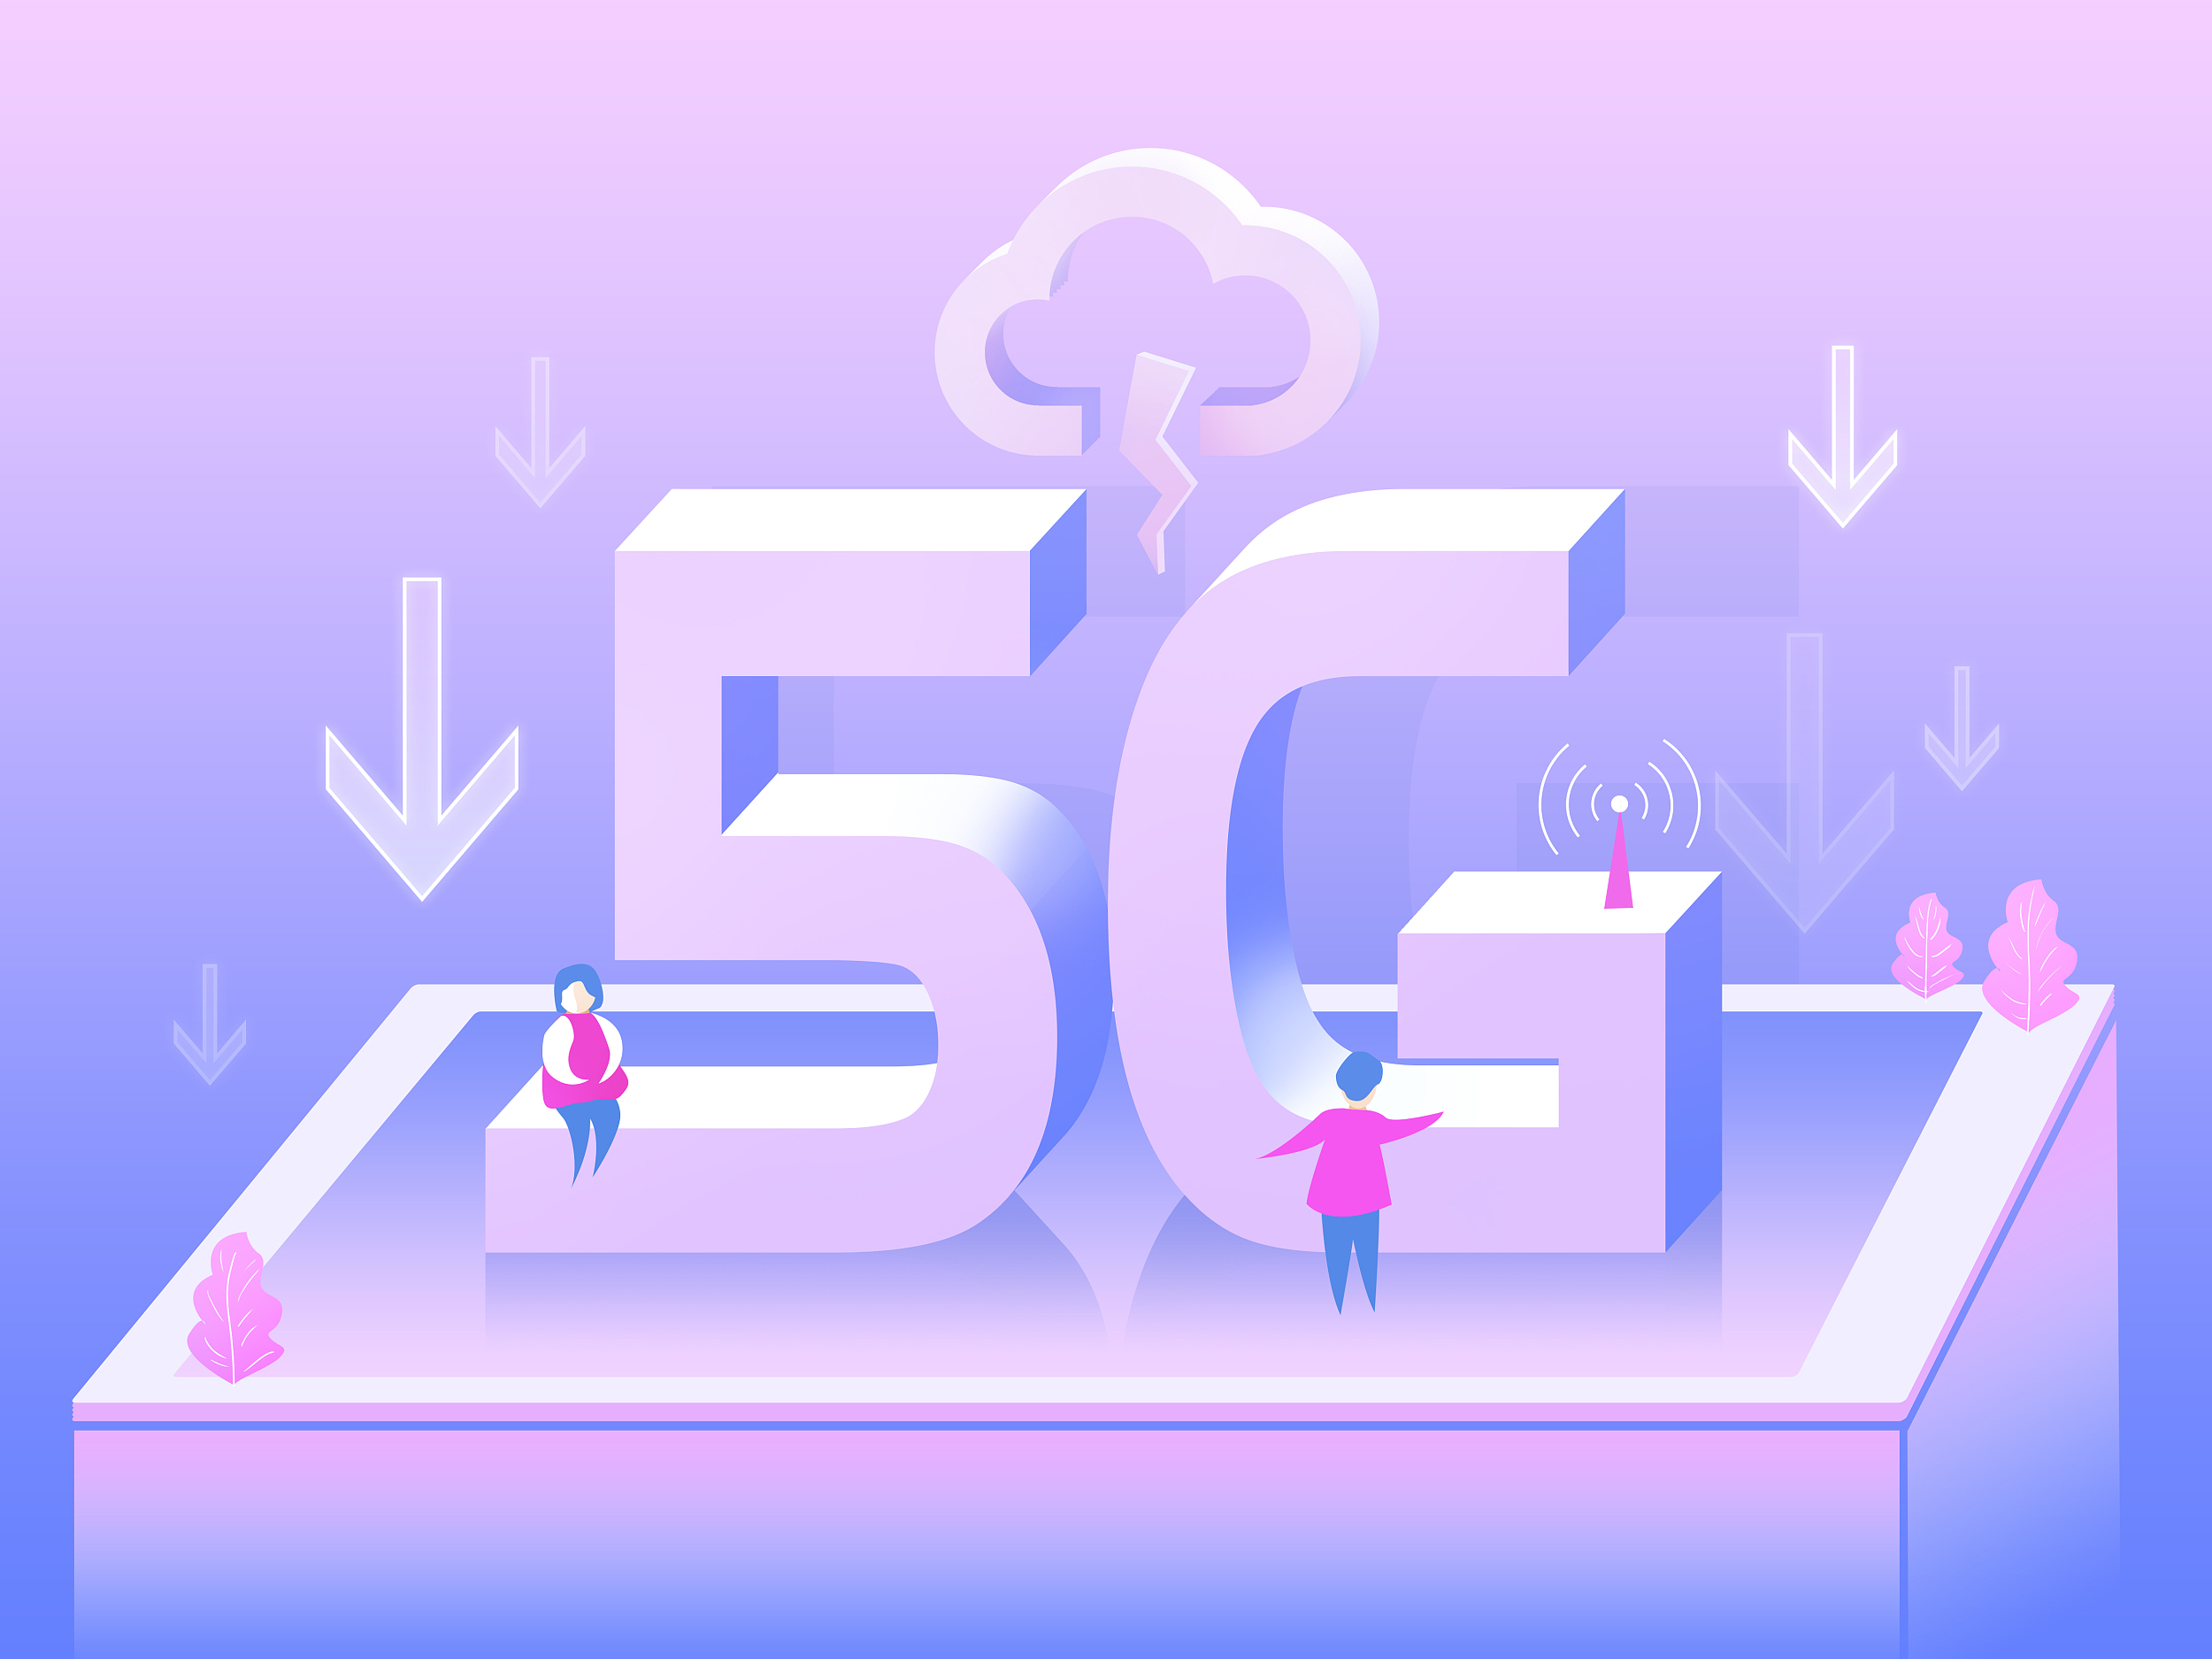 4G 设备显示 5G 网络标识，是手机更新还是运营商设定有误？  第3张